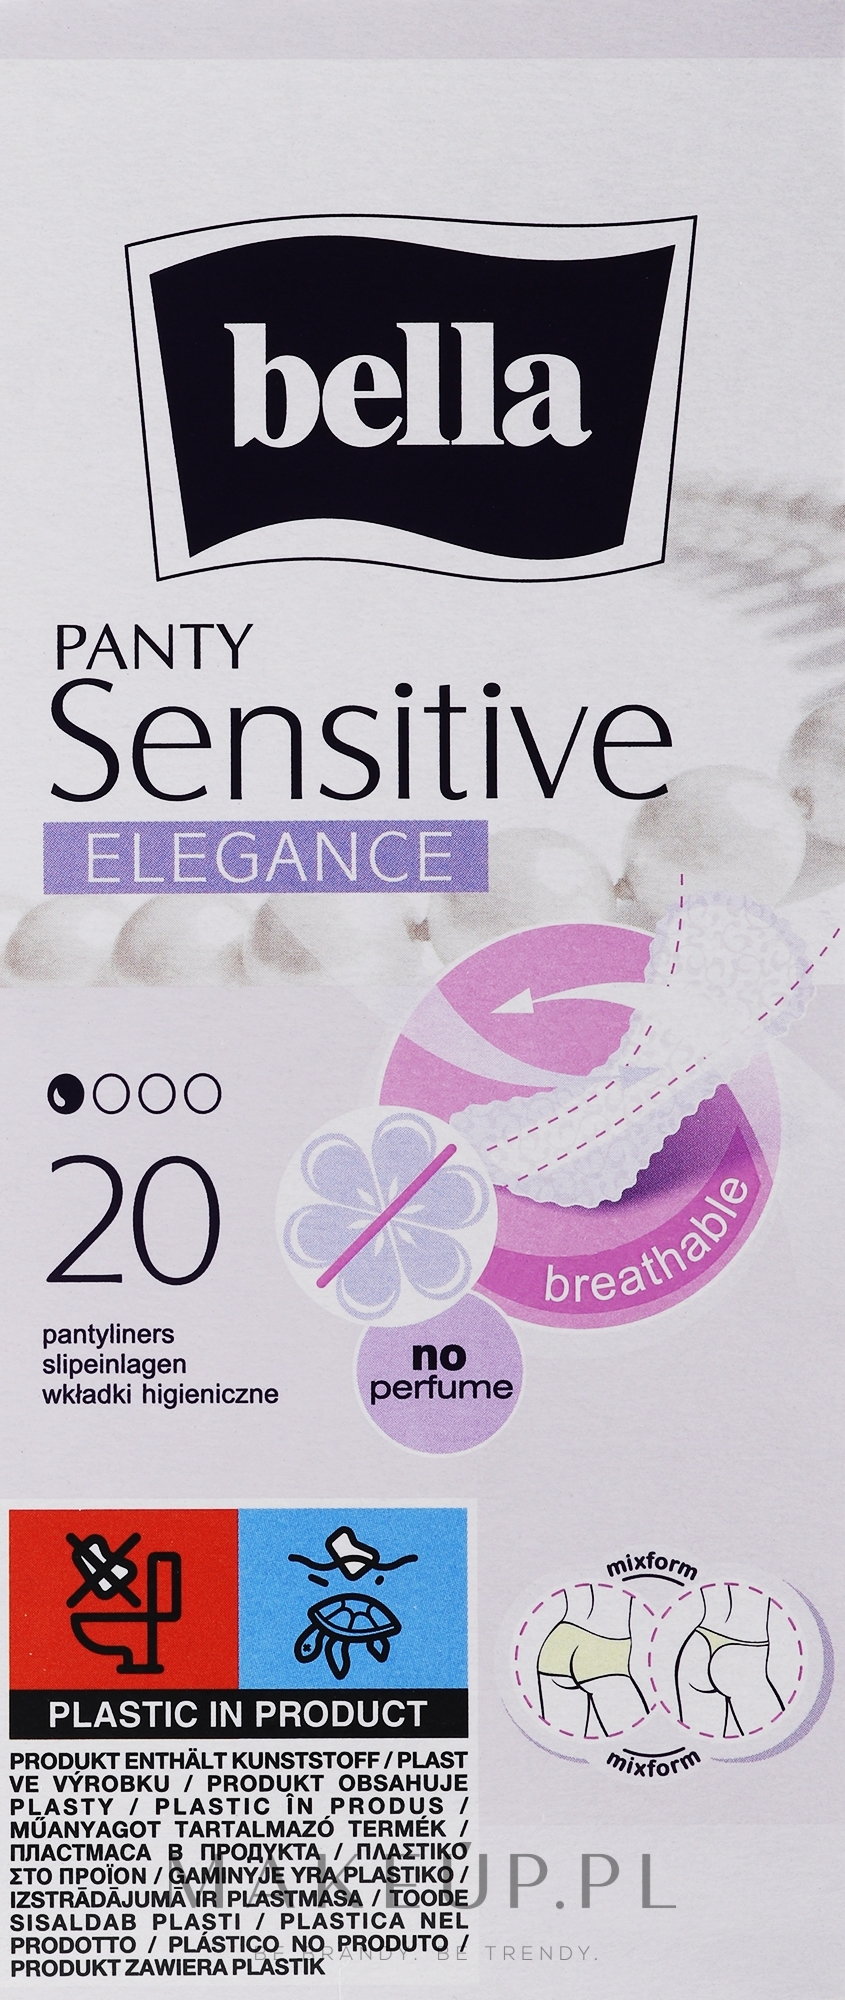 Wkładki higieniczne, 20 szt. - Bella Panty Sensitive Elegance — Zdjęcie 20 szt.